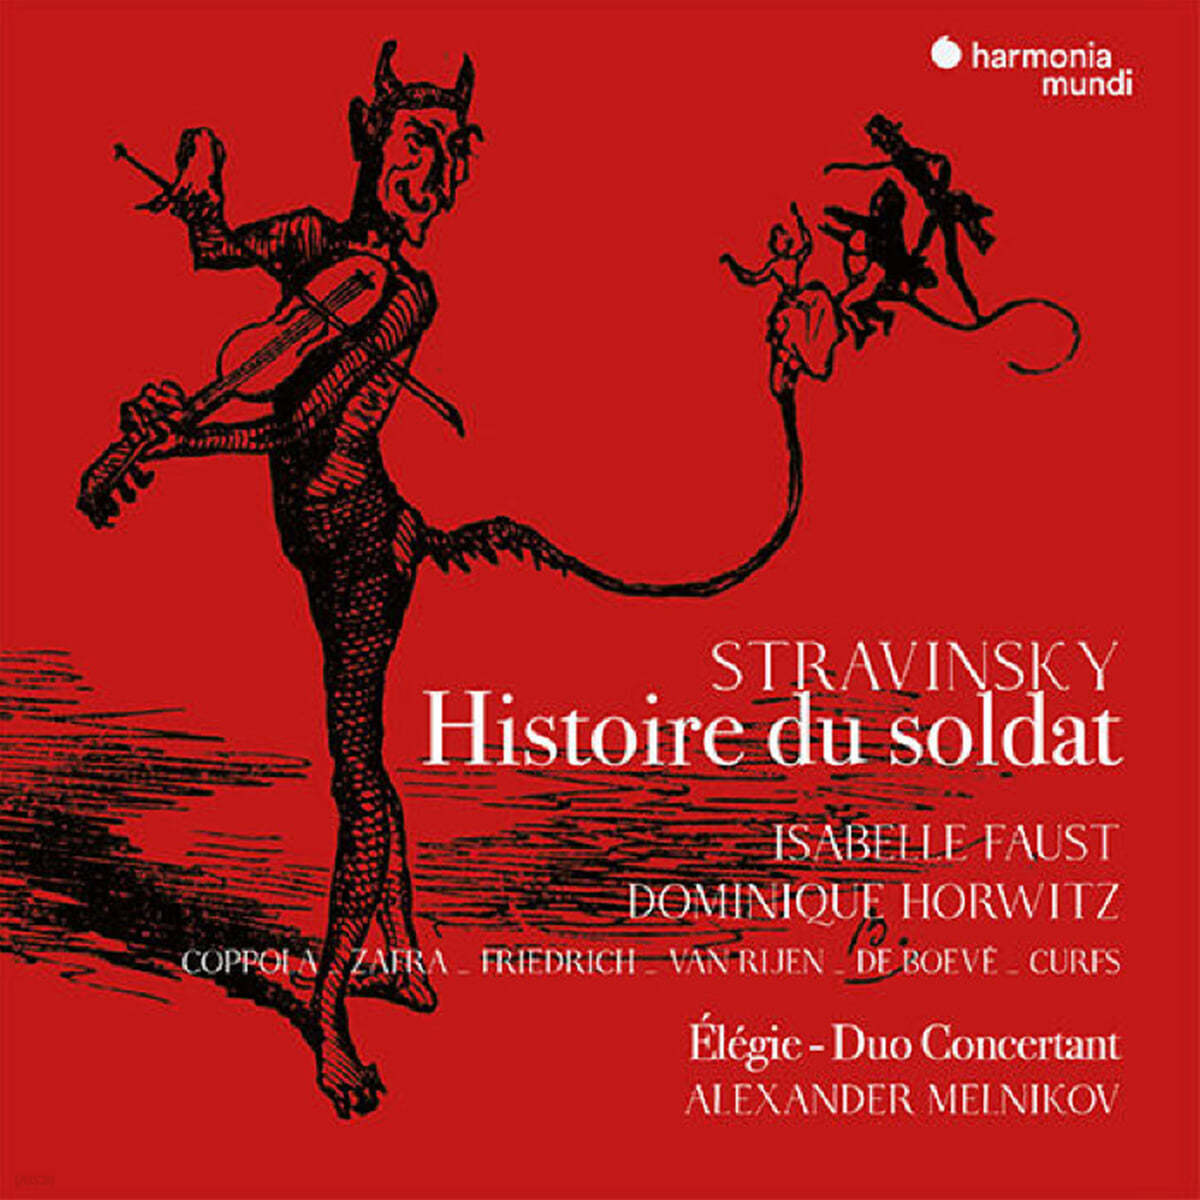 Isabelle Faust / Alexander Melnikov 스트라빈스키: 병사 이야기 [프랑스어 버전] (Stravinsky: L'Histoire du Soldat - French version) 